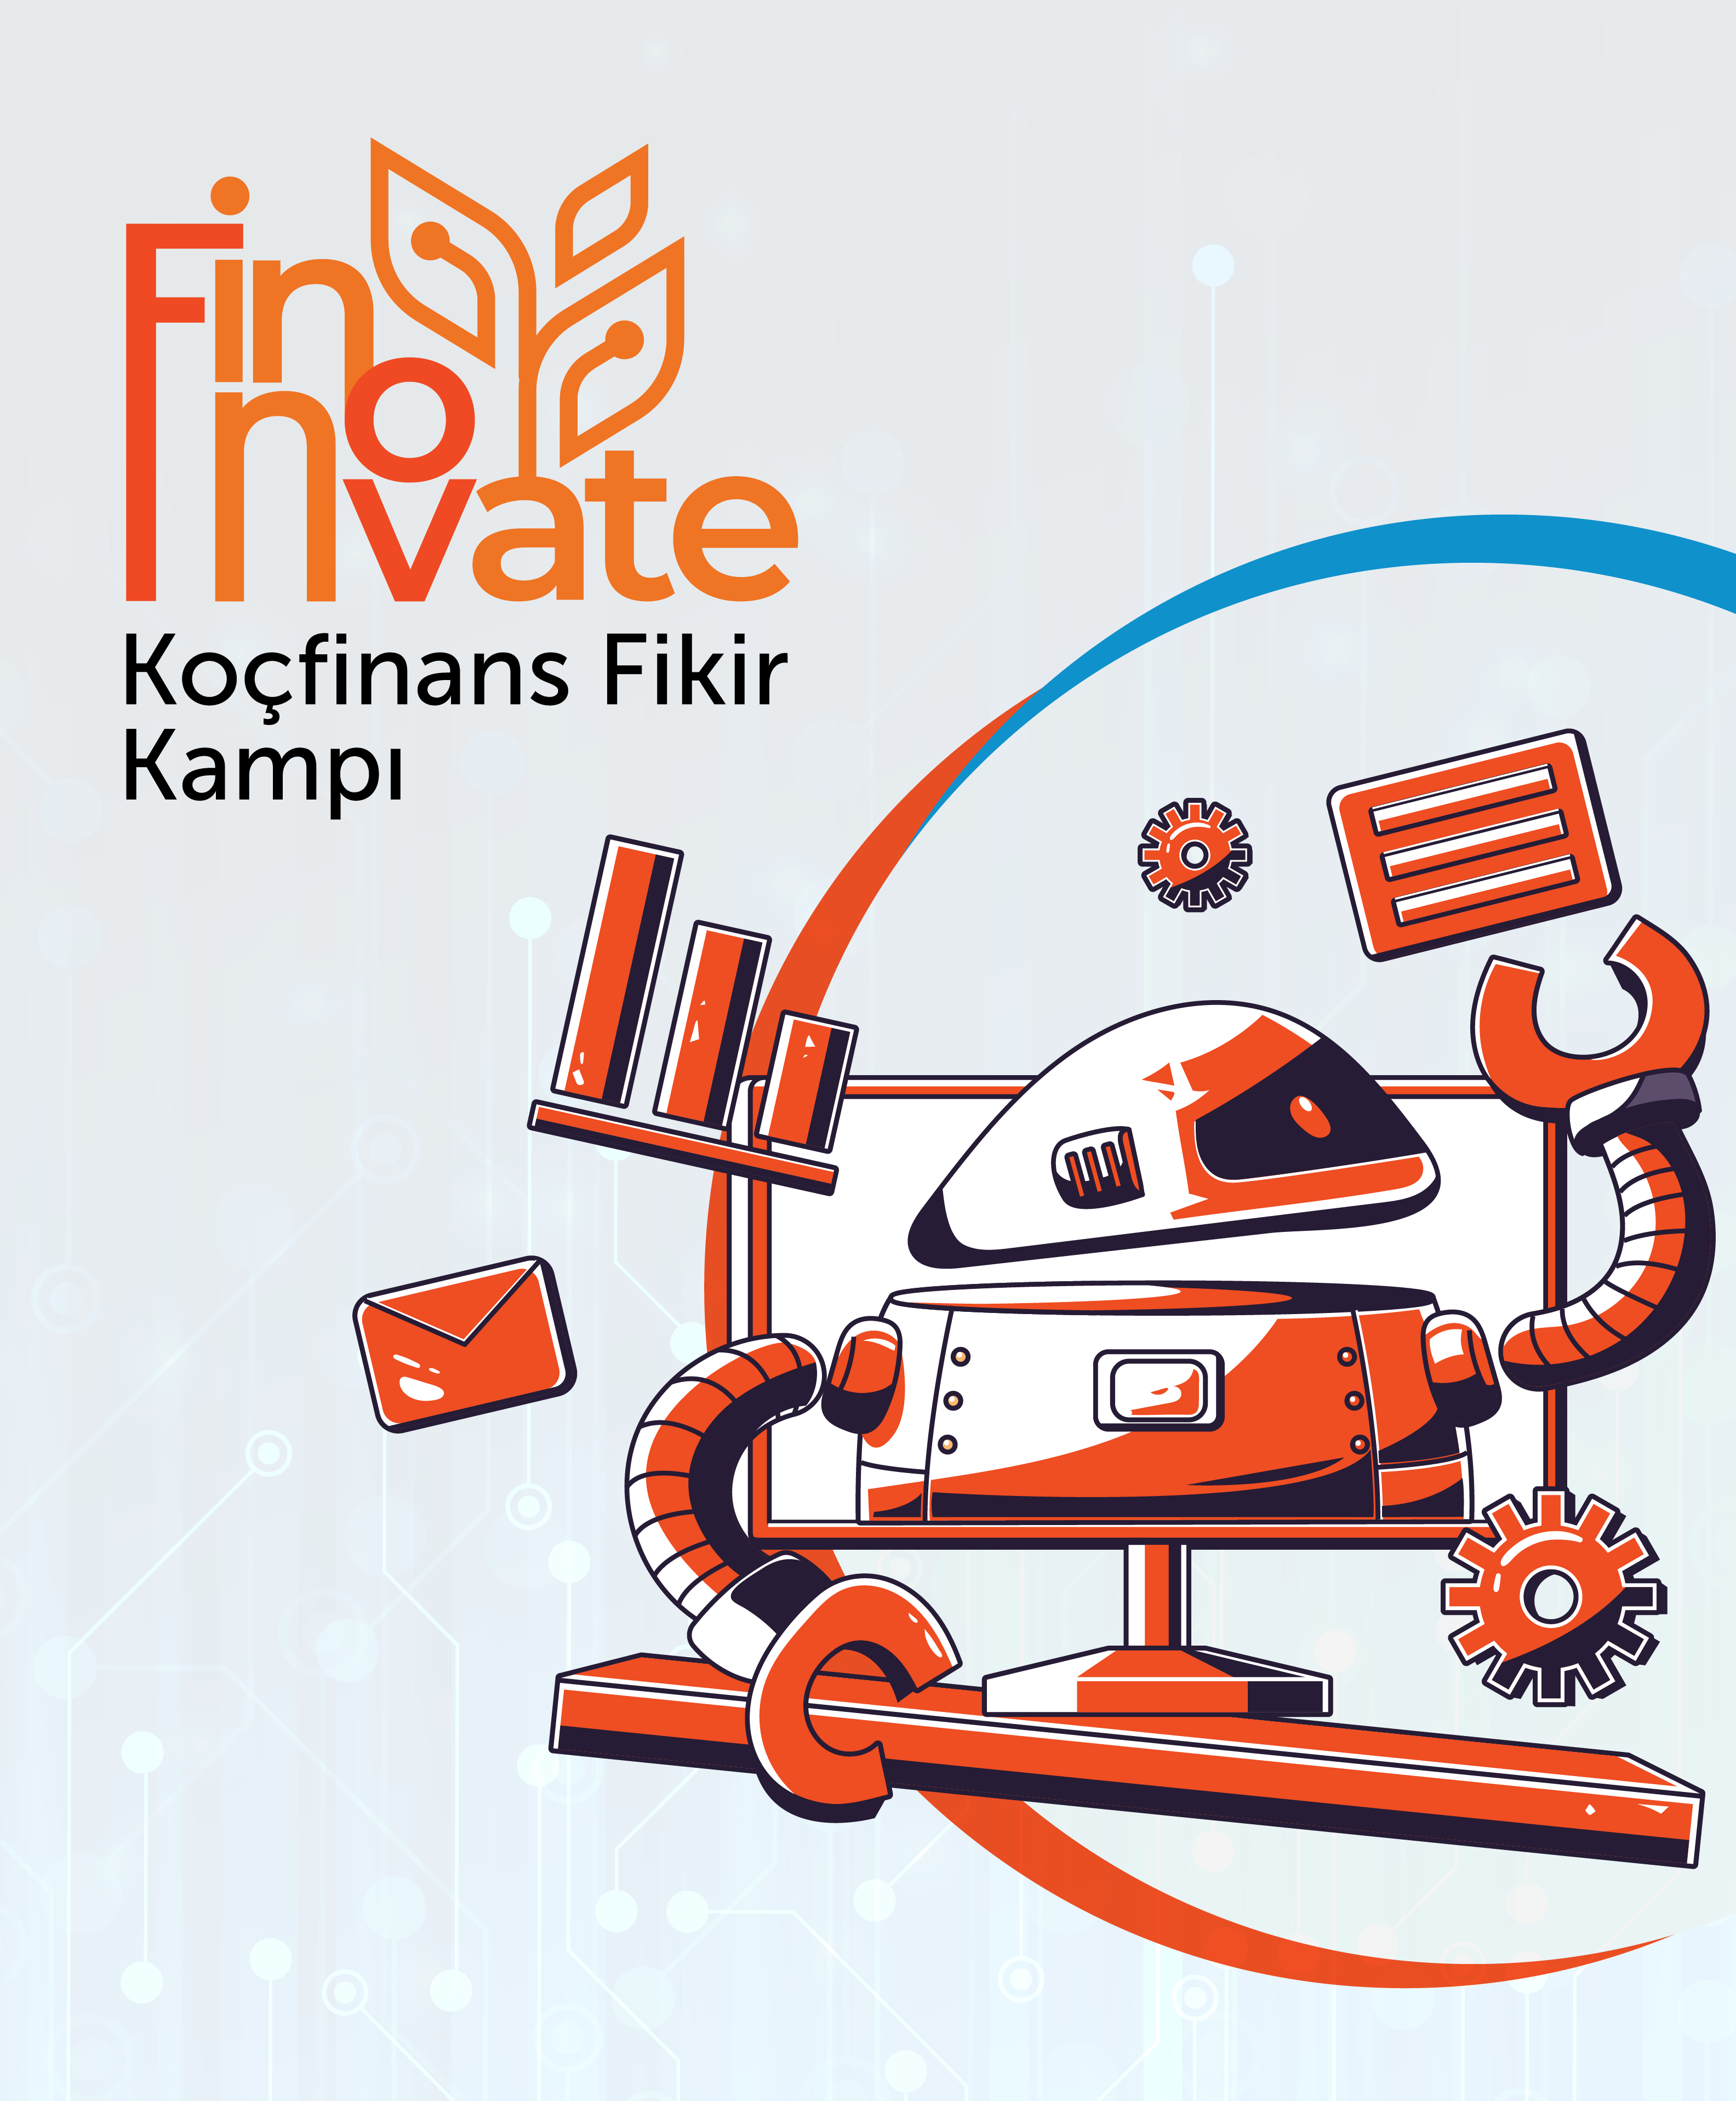 Geleceğin finans dünyasına inovatif bakış: “Finnovate” Koçfinans Fikir Kampı